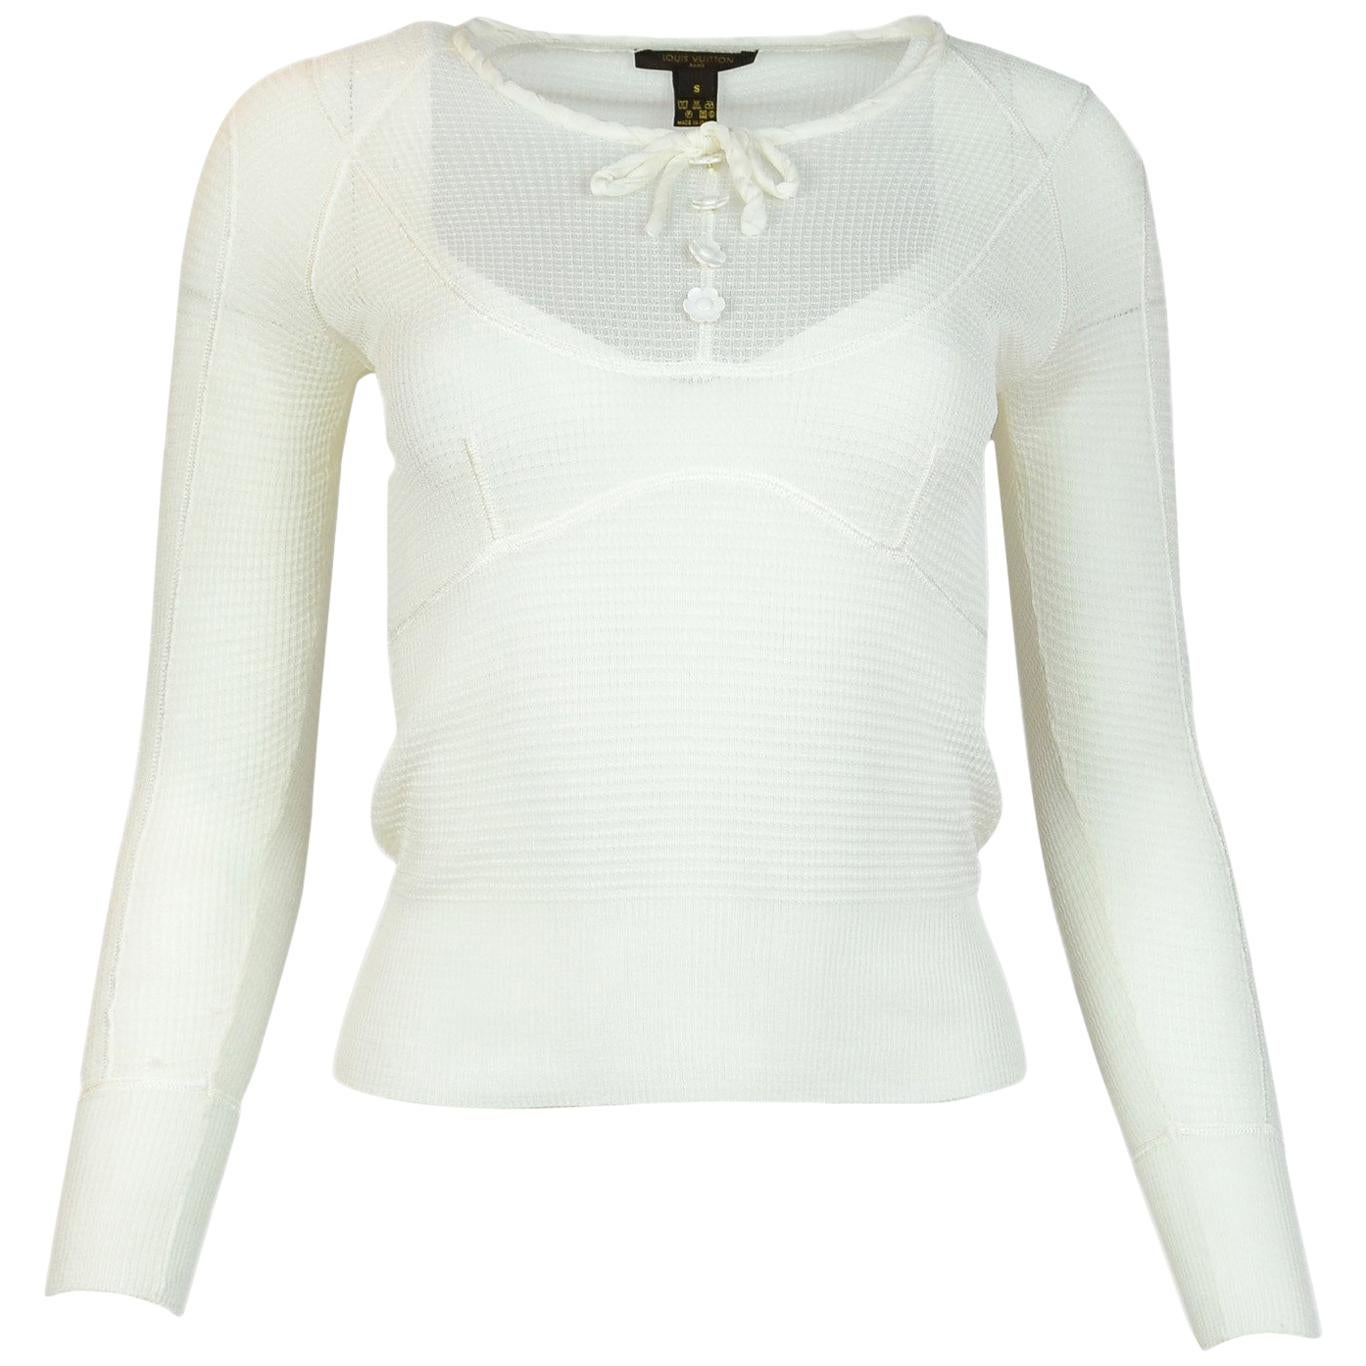 Louis Vuitton Cream Long-Sleeve Silk Sheer Knit Top W/ White Flower Buttons Sz S